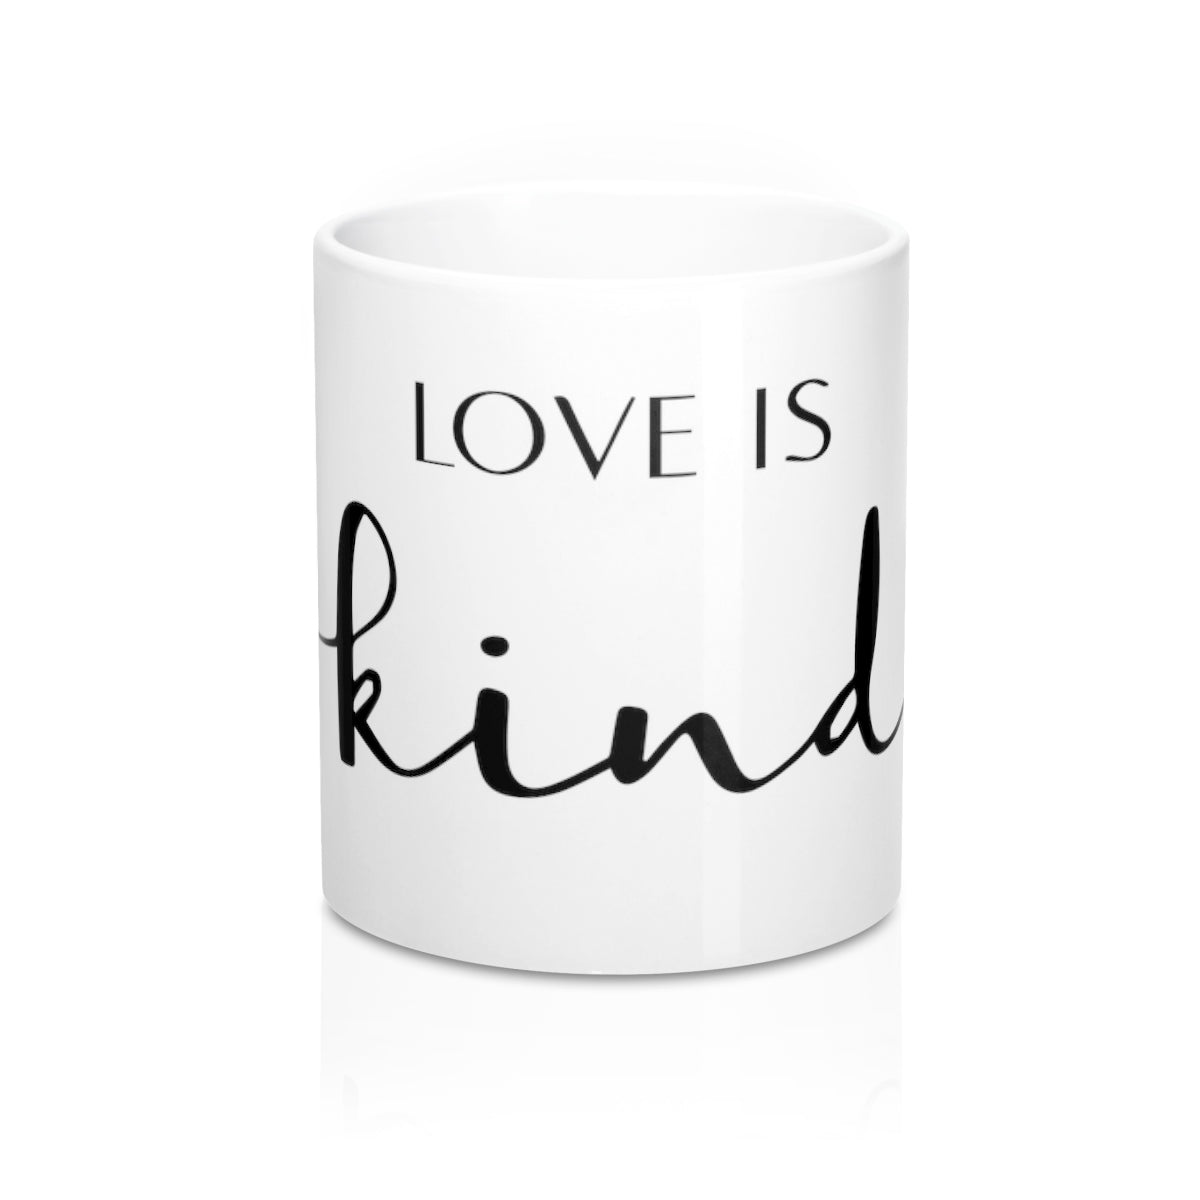 Love is Kind Mug 11oz